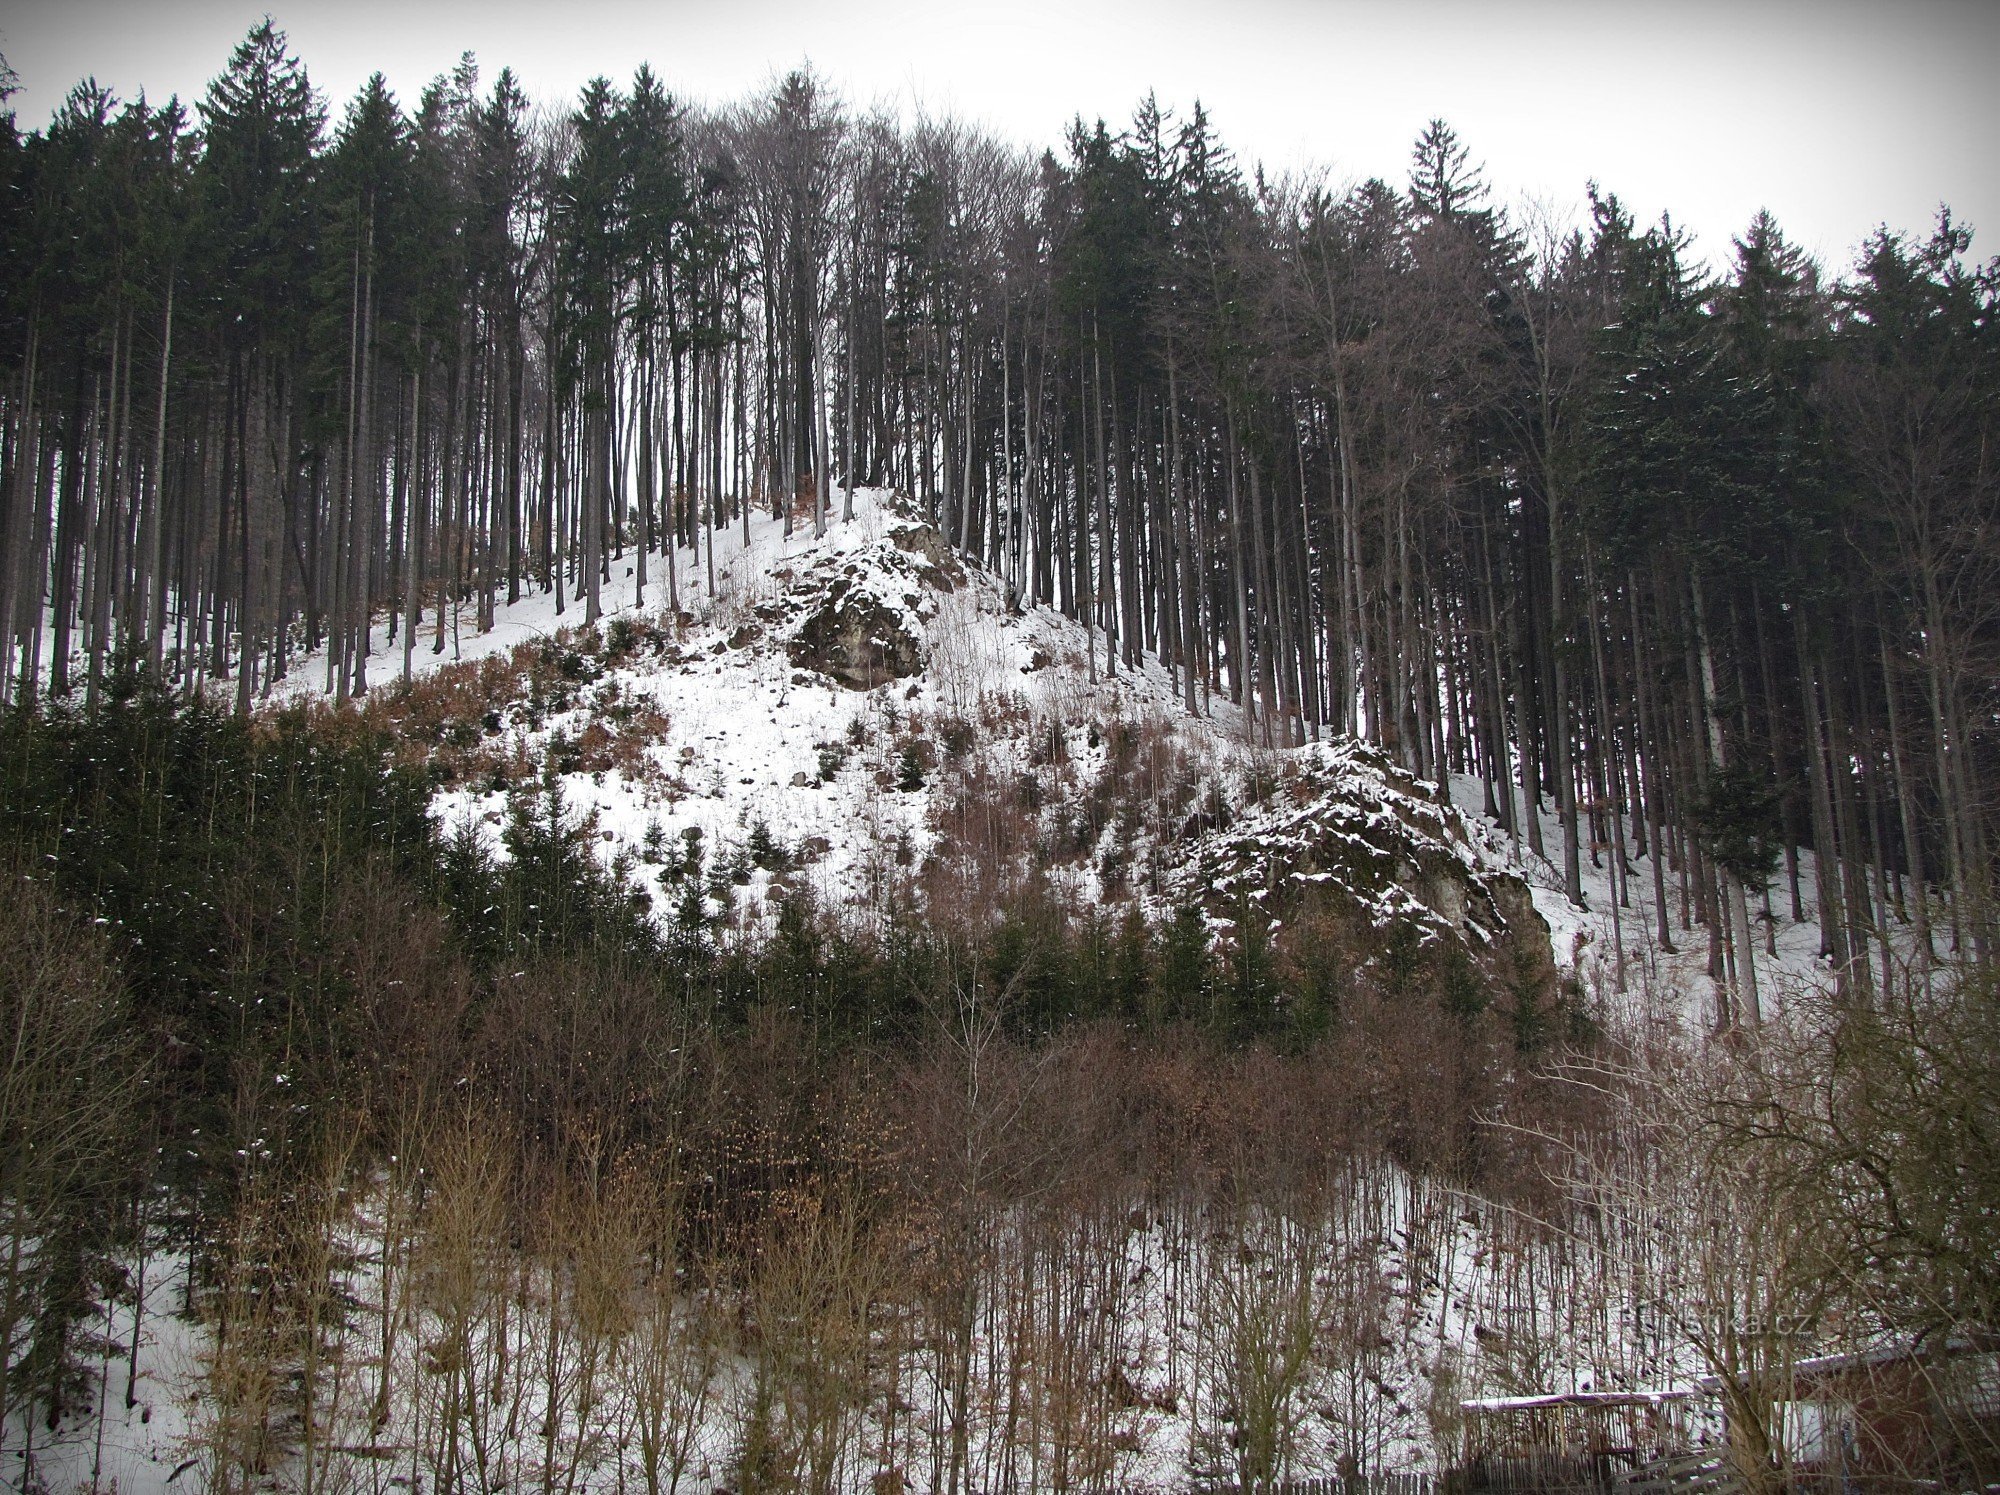 Ráztoka valley near Držková